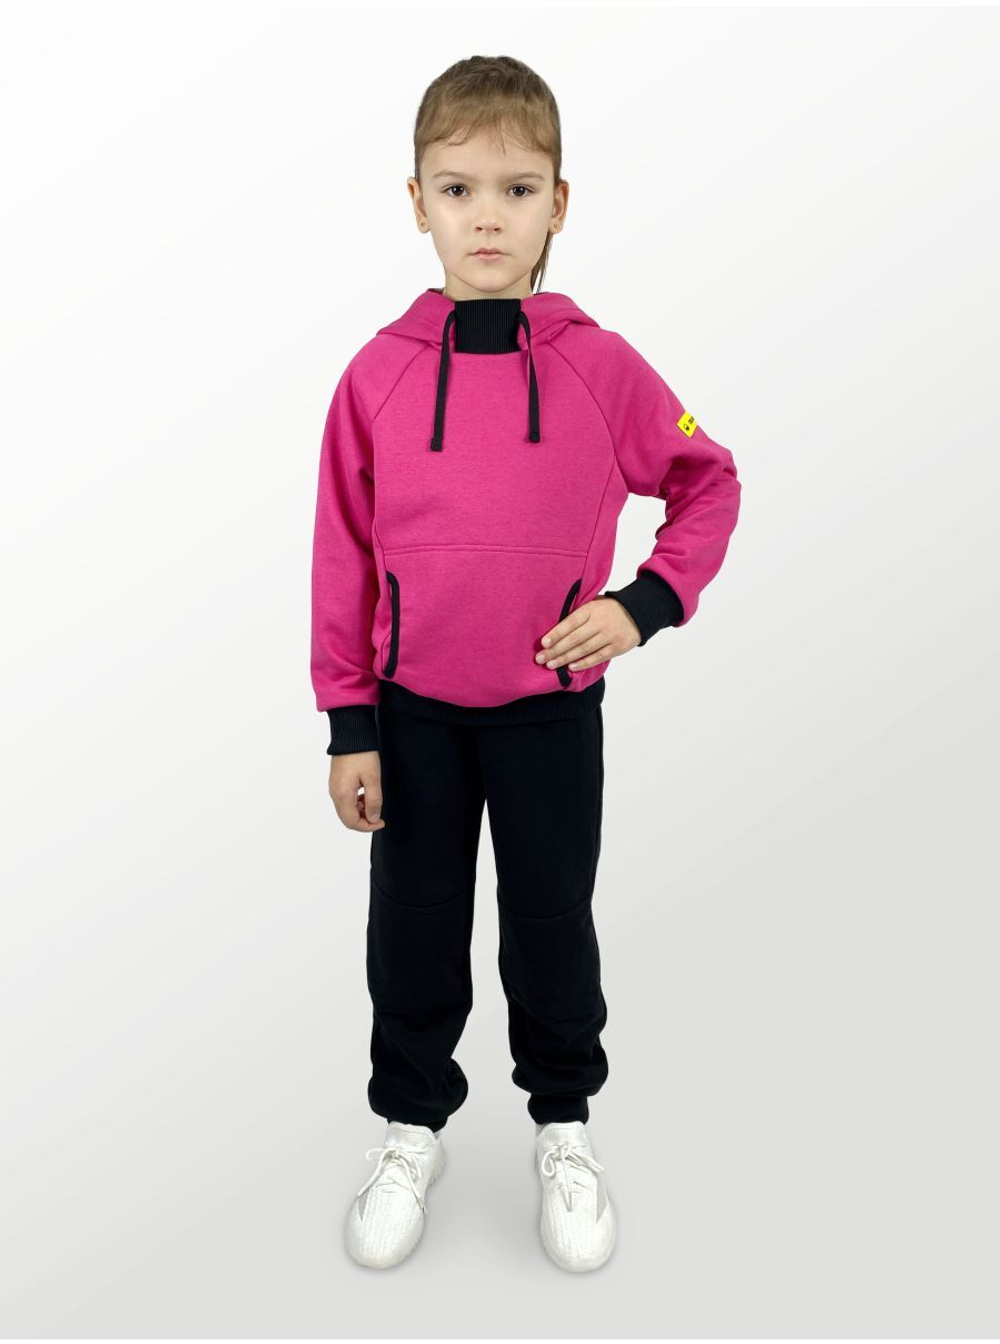 Худи для детей, модель №4, с капюшоном, рост 110 см, фуксия